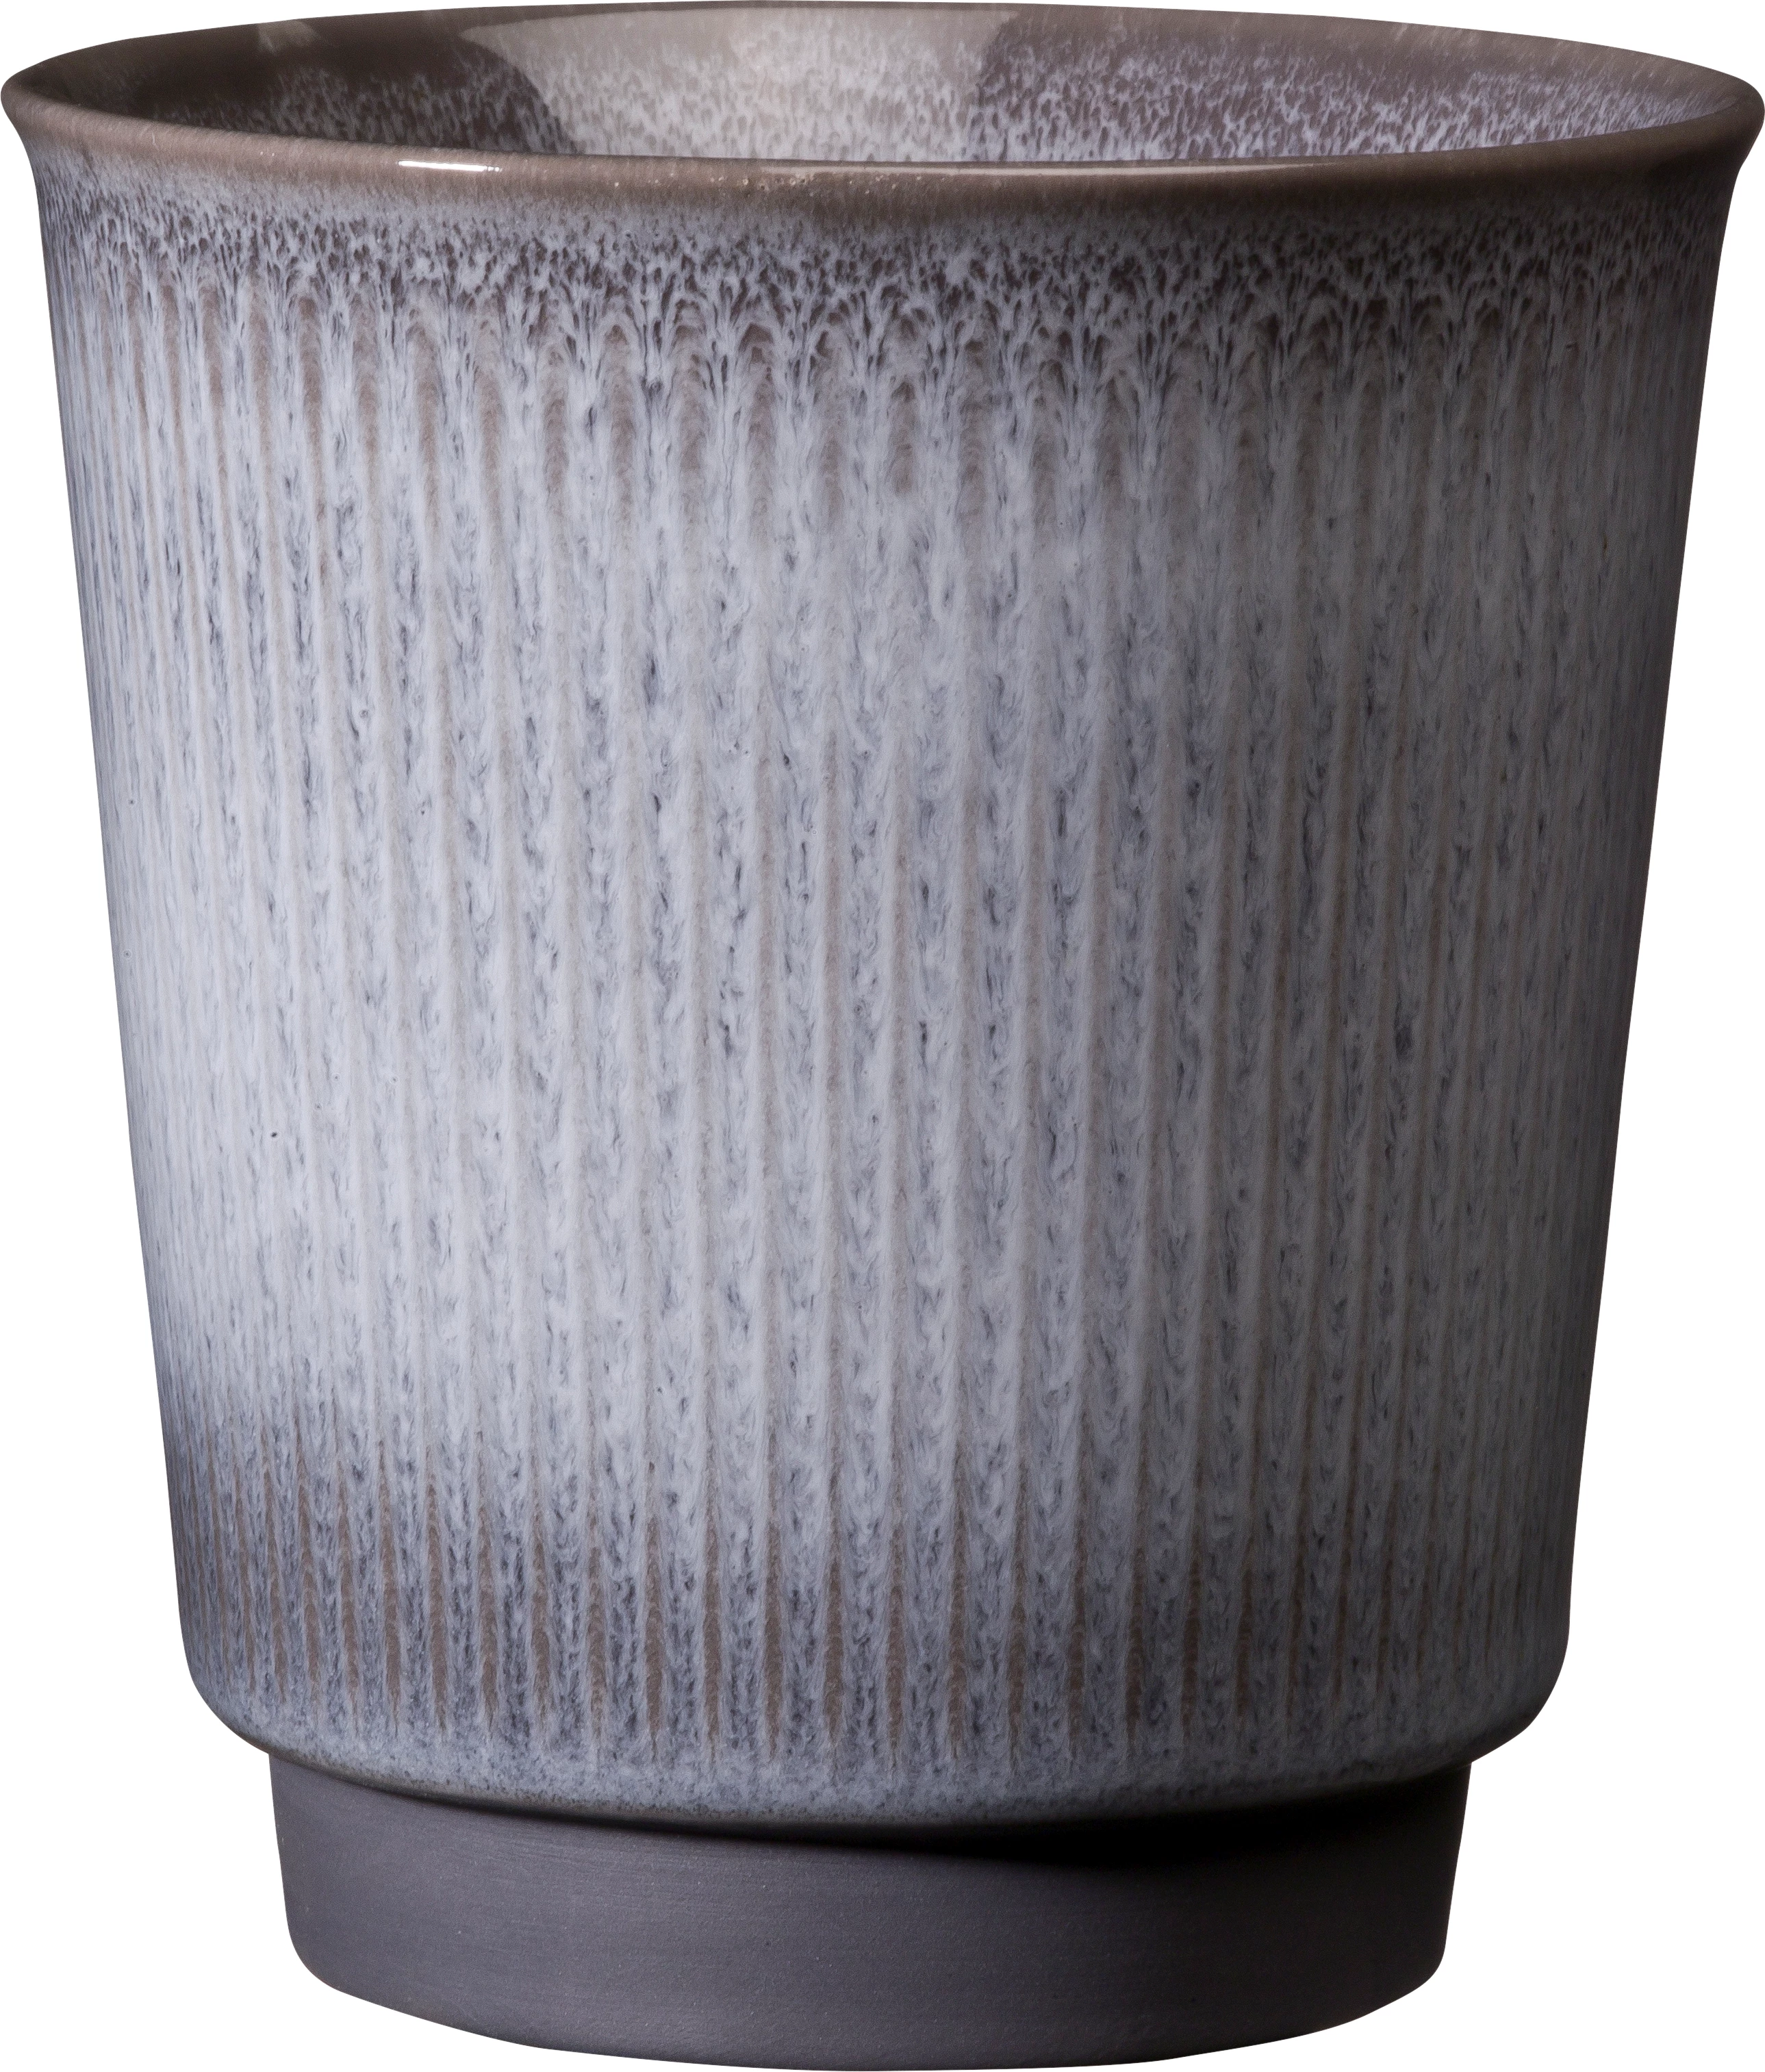 Cups kop uden hank, grå, 22 cl